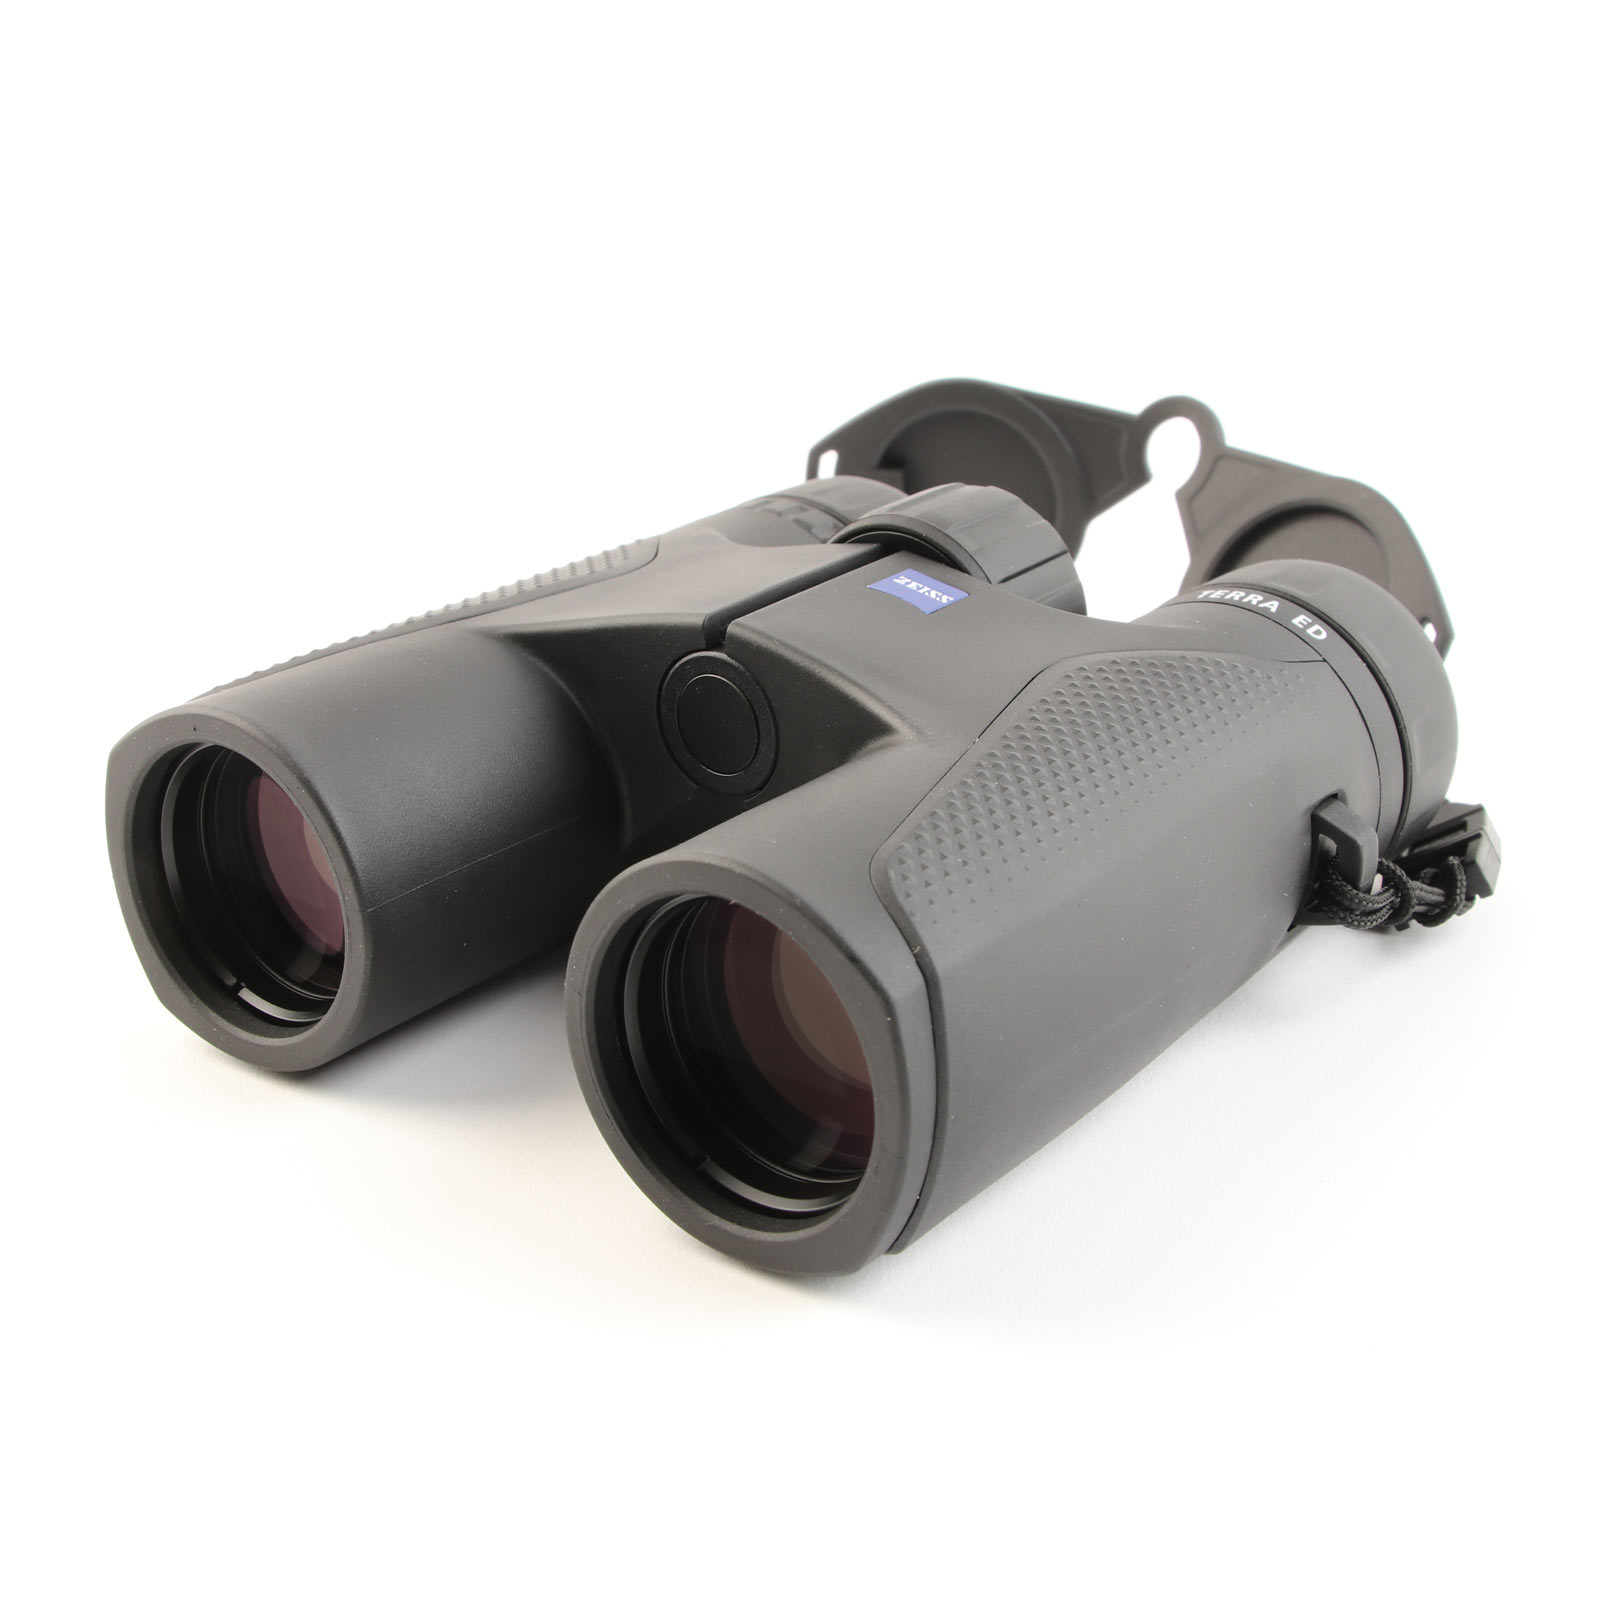 USED Zeiss Terra ED 8x32 Binoculars - Black